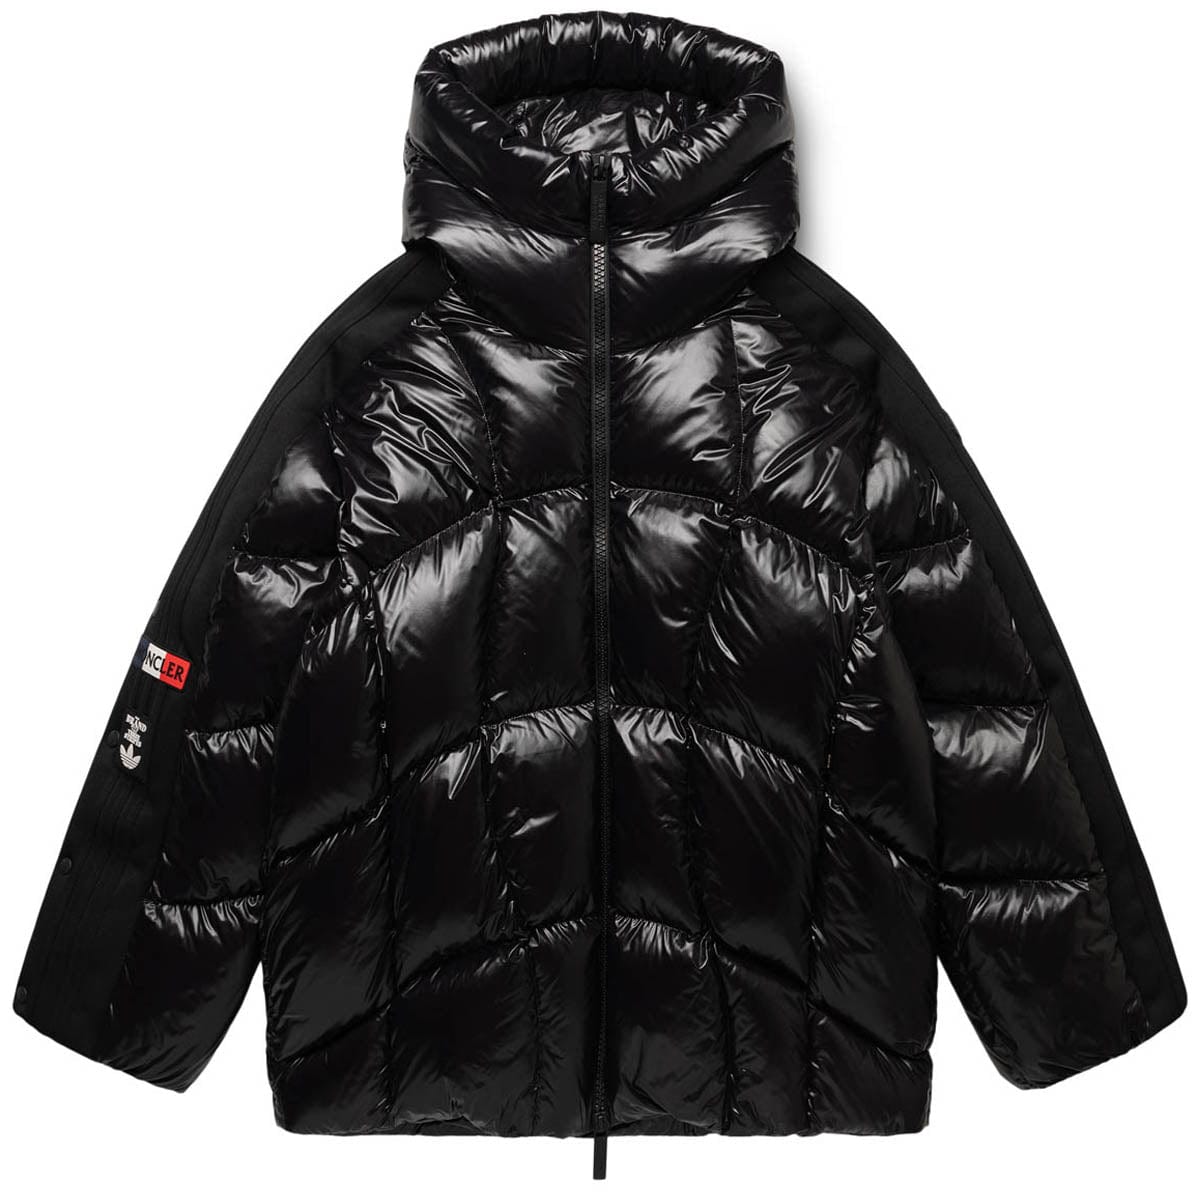 Wool Jacket With Zip | BEISER JACKET BLACK | GmarShops